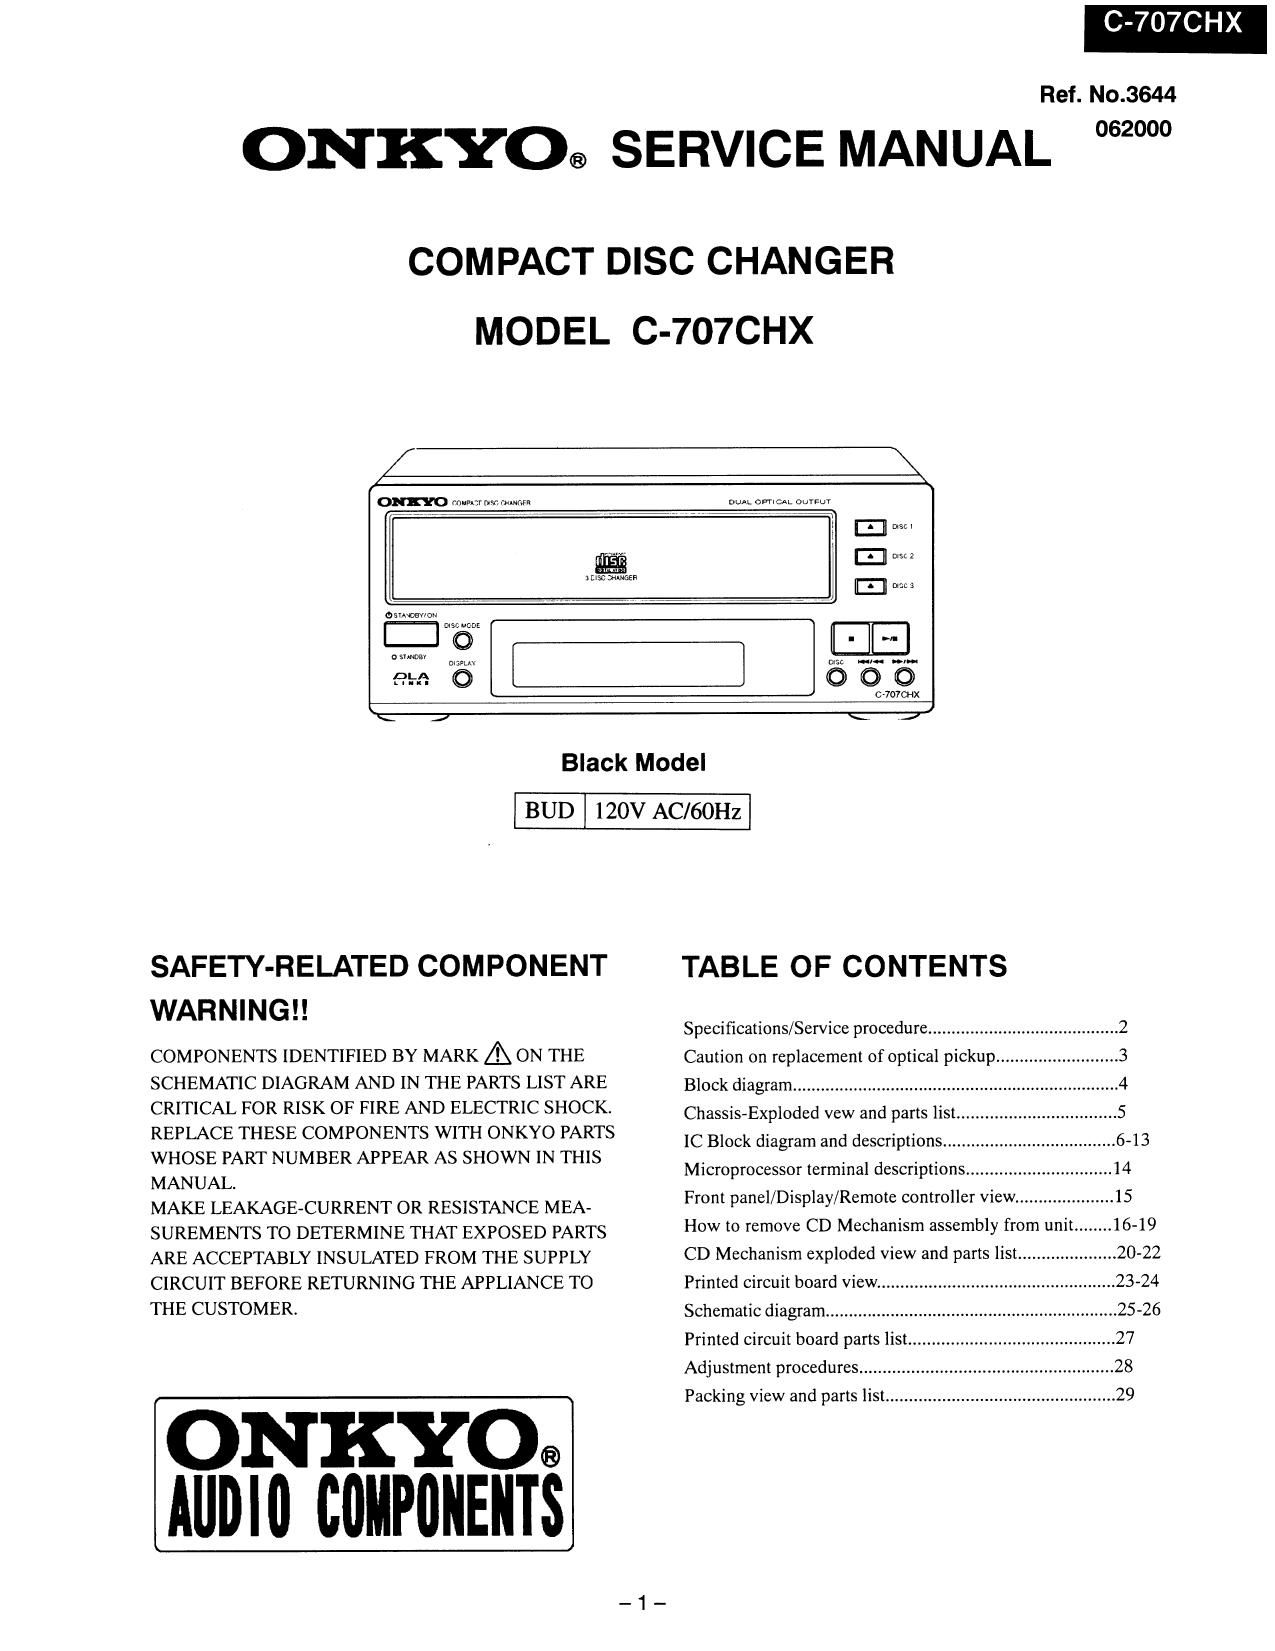 Onkyo C 707 CHX Service Manual